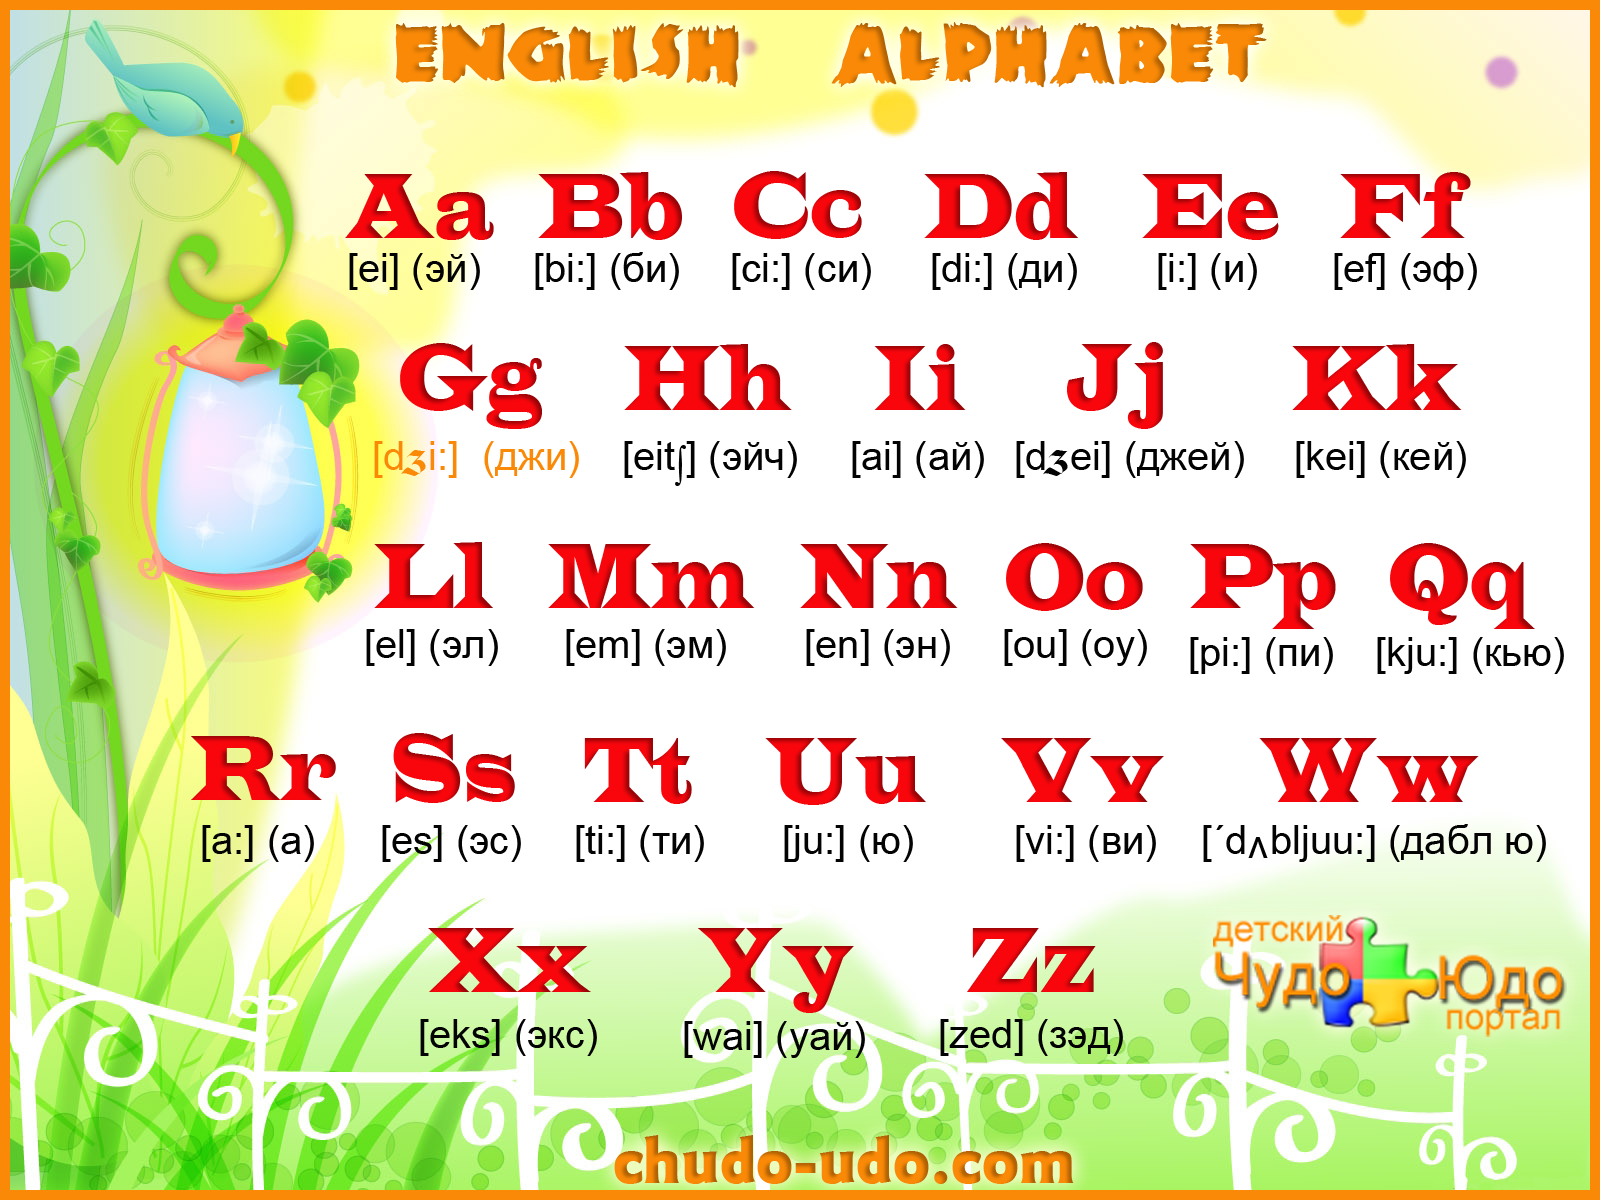 Читать буквы слушать. Английский алфавит с транскрипцией для детей 2кл. Английский алфавит для детей произношение букв. Английский язык для детей алфавит с произношением. Английский алфавит с трансск.